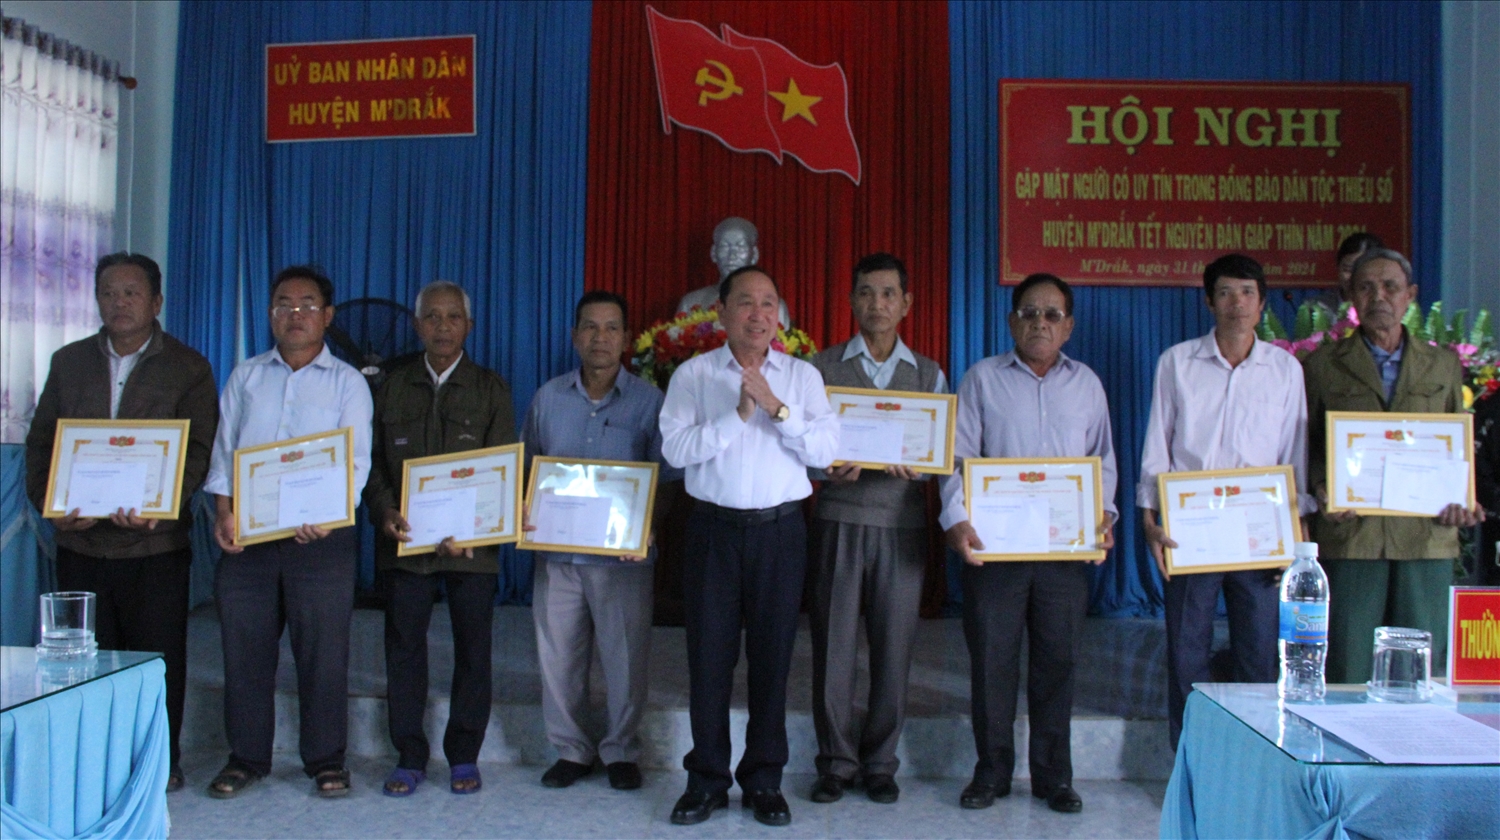 Phó Chủ tịch UBND huyện M’đrắk Lê Văn Thao trao giấy khen của Chủ tịch huyện cho đại biểu Người có uy tín tiêu biểu